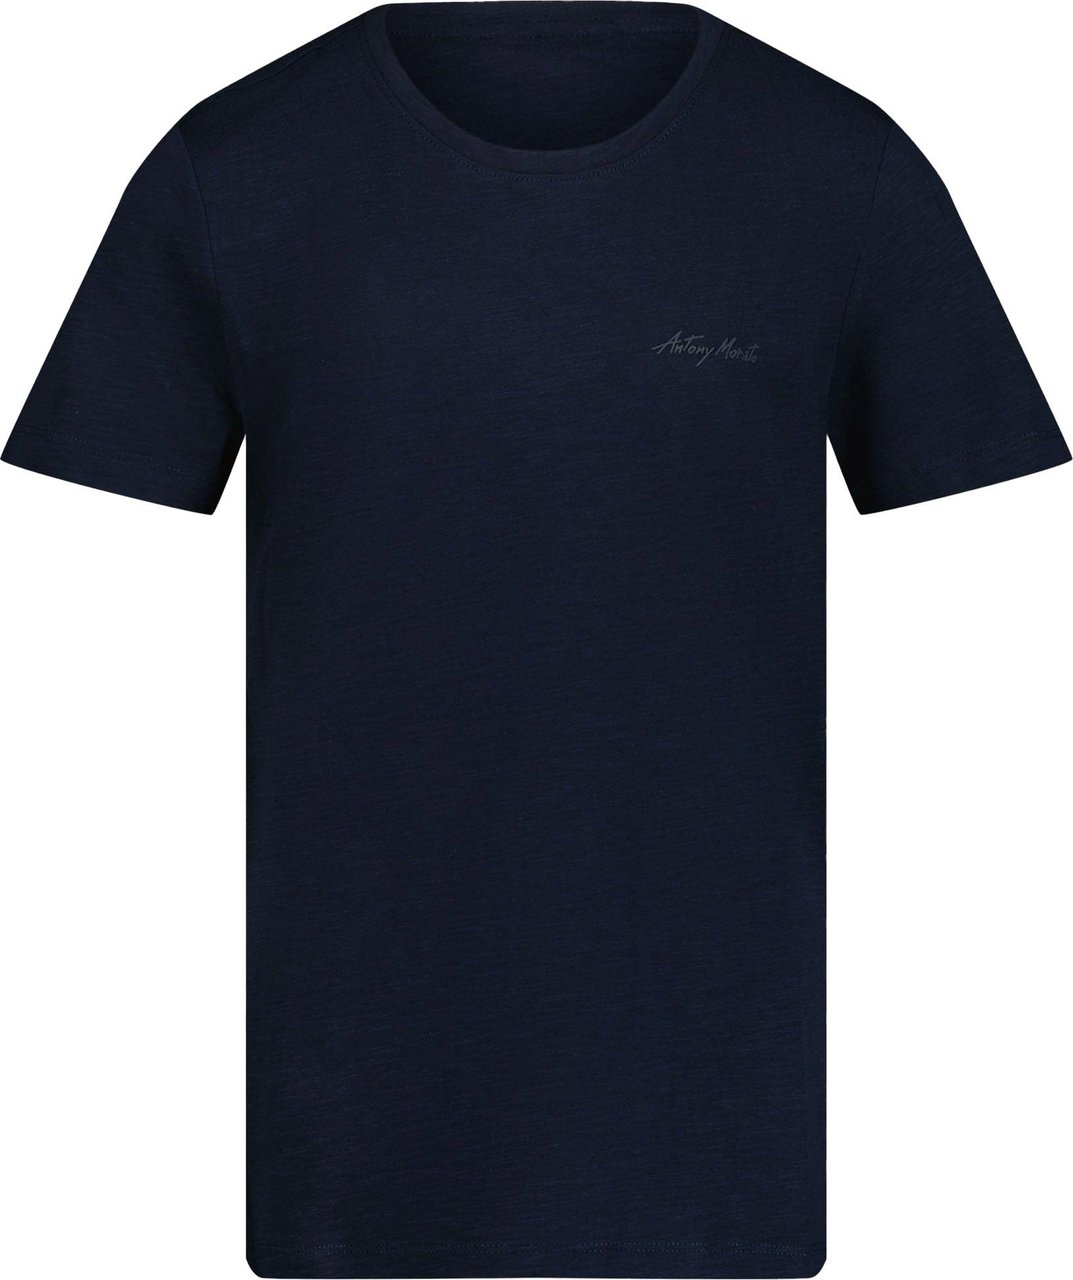 Antony Morato Antony Morato Kinder Jongens T-shirt Navy Blauw